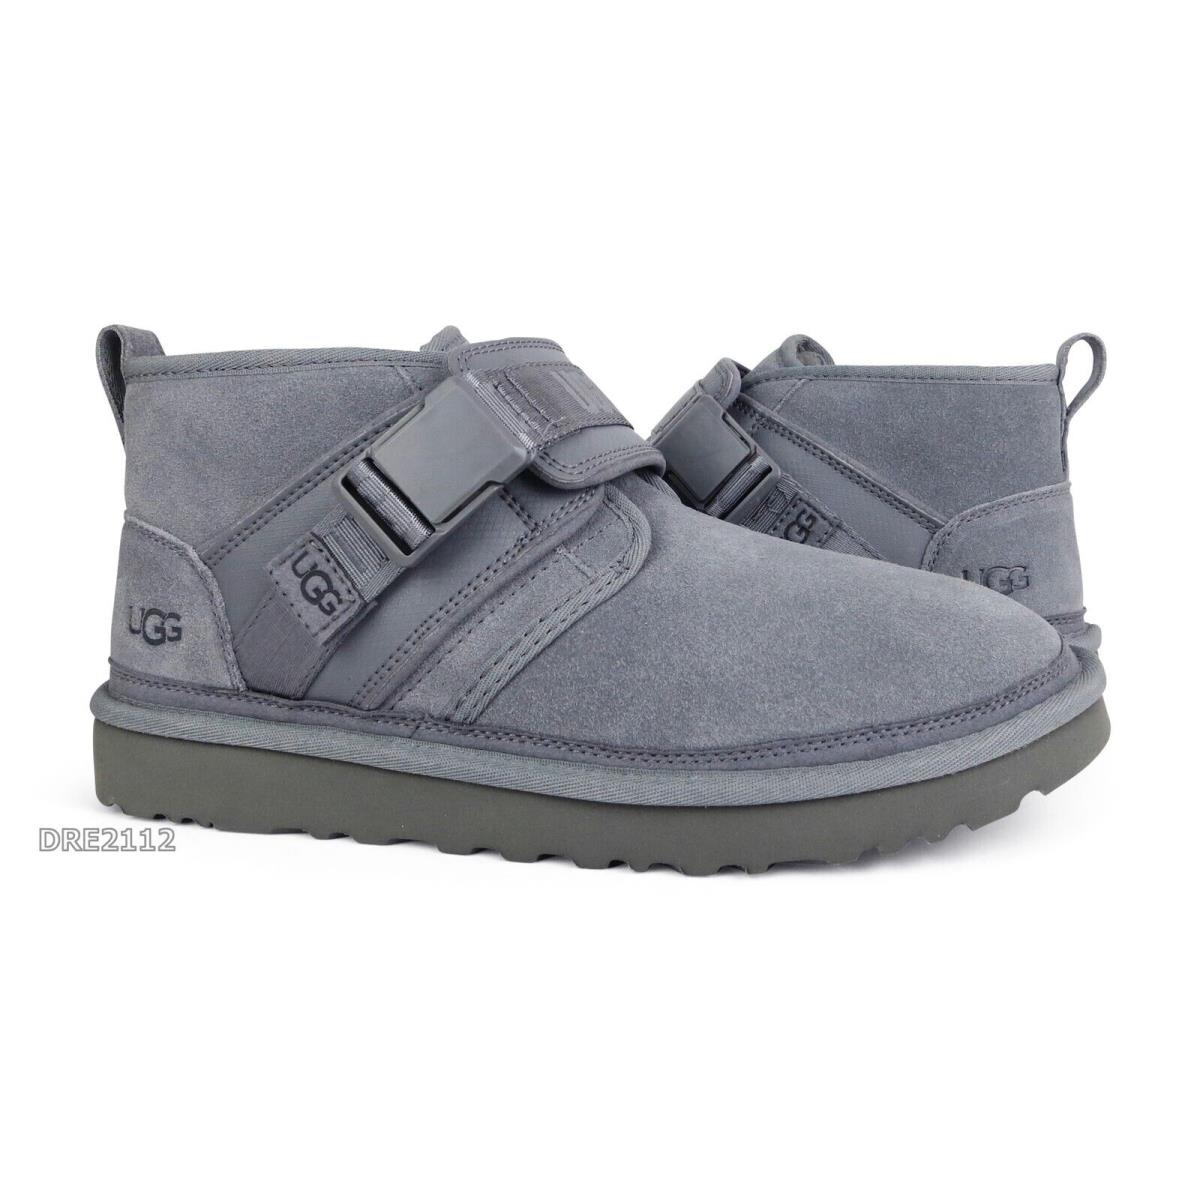 Ugg Neumel Snapback Metal Suede Fur Shoes Mens Size 10 - Gray